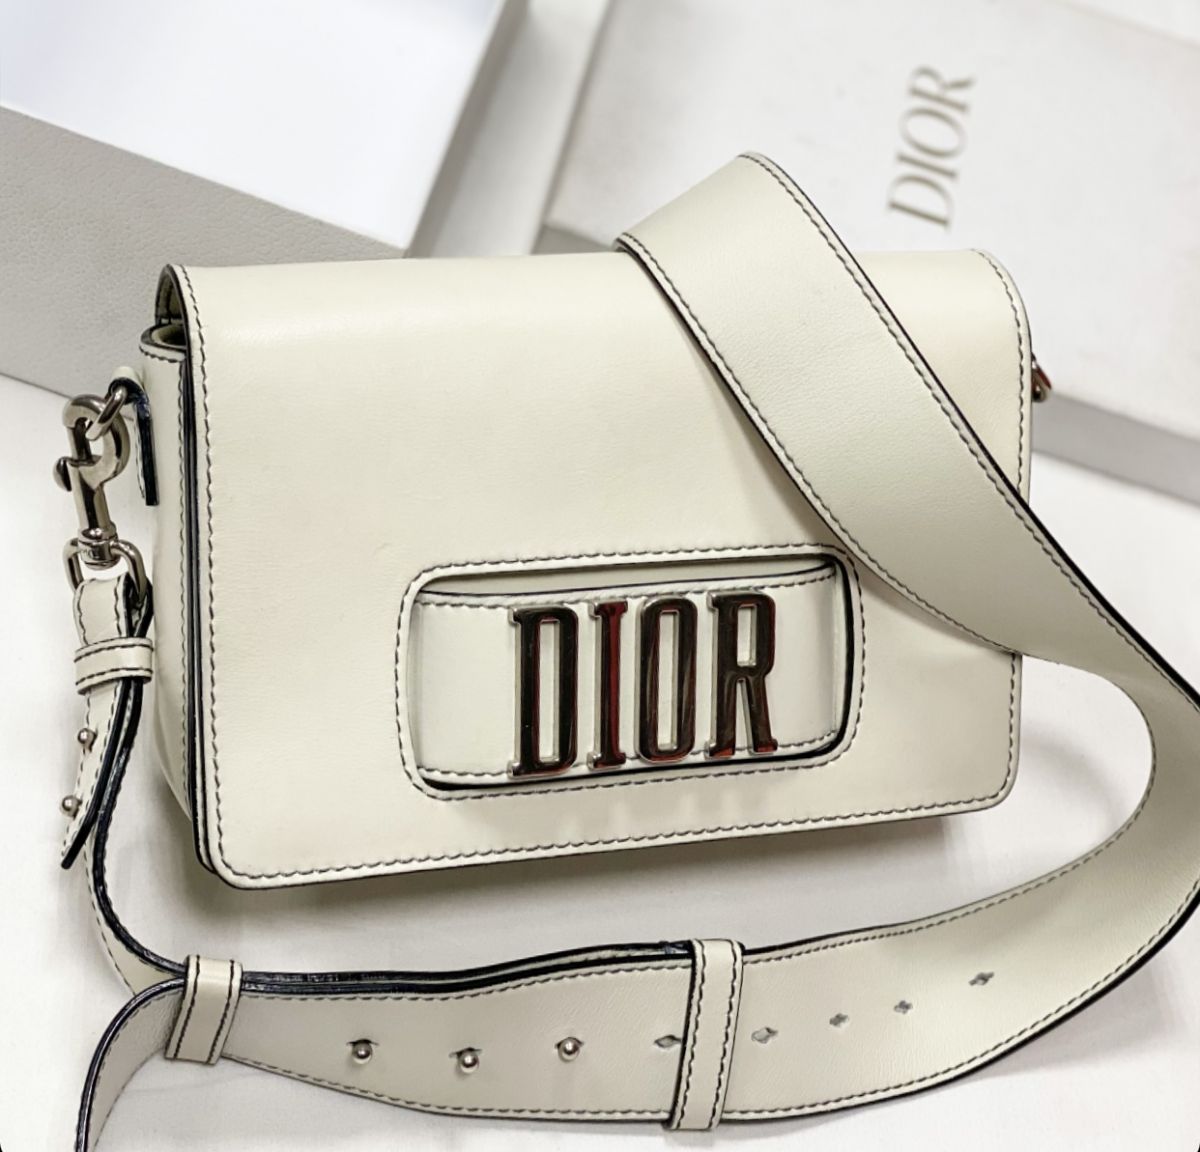 Сумка Christian Dior размер 25/15 цена 138 463 руб 